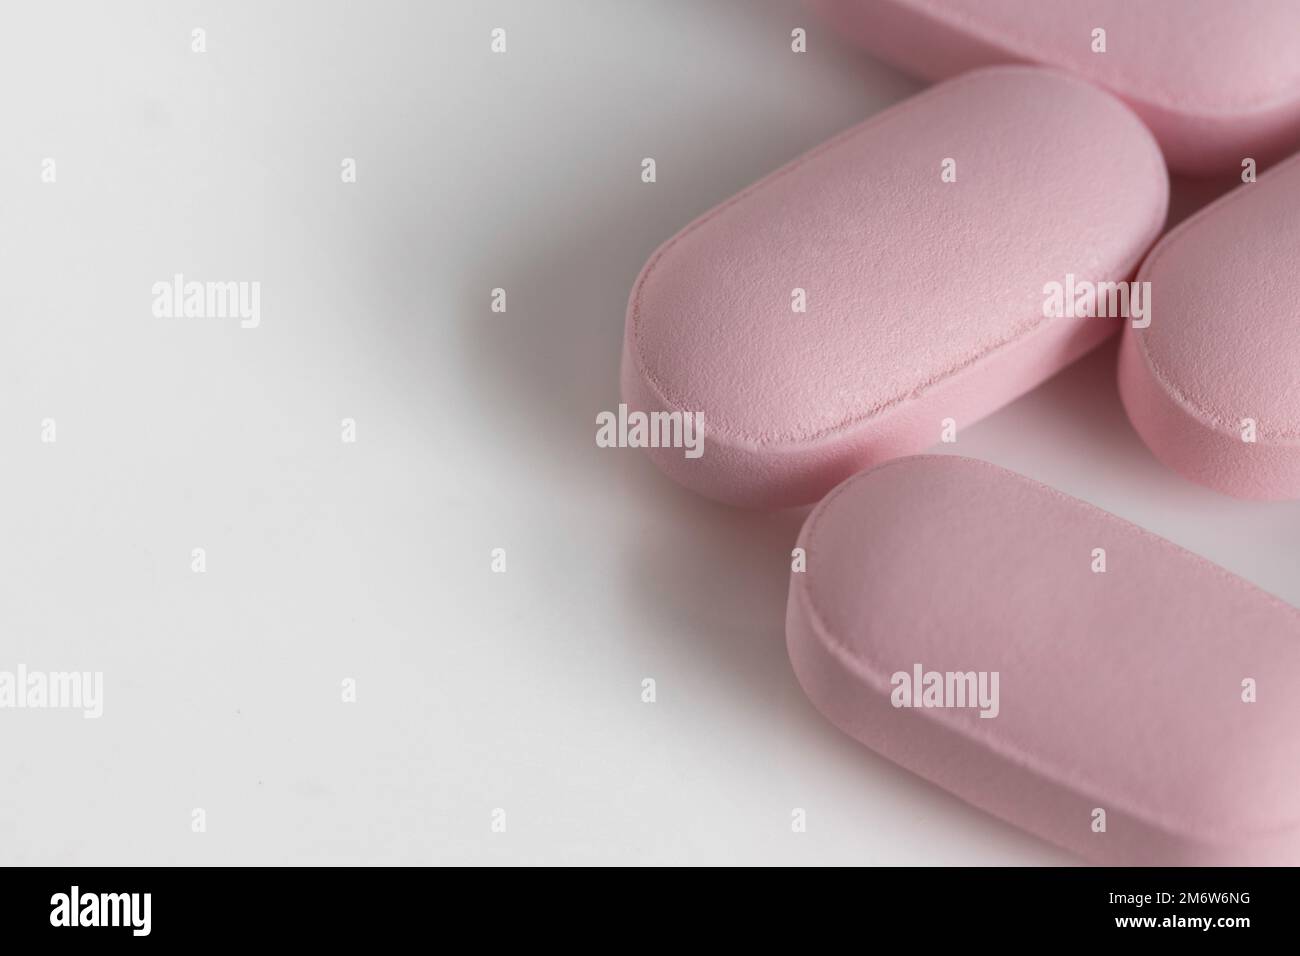 Nahaufnahme, Makroaufnahme von pinkfarbenen, länglichen Tablettentabletten auf weißem Hintergrund mit Kopierbereich und geringer Schärfentiefe Stockfoto